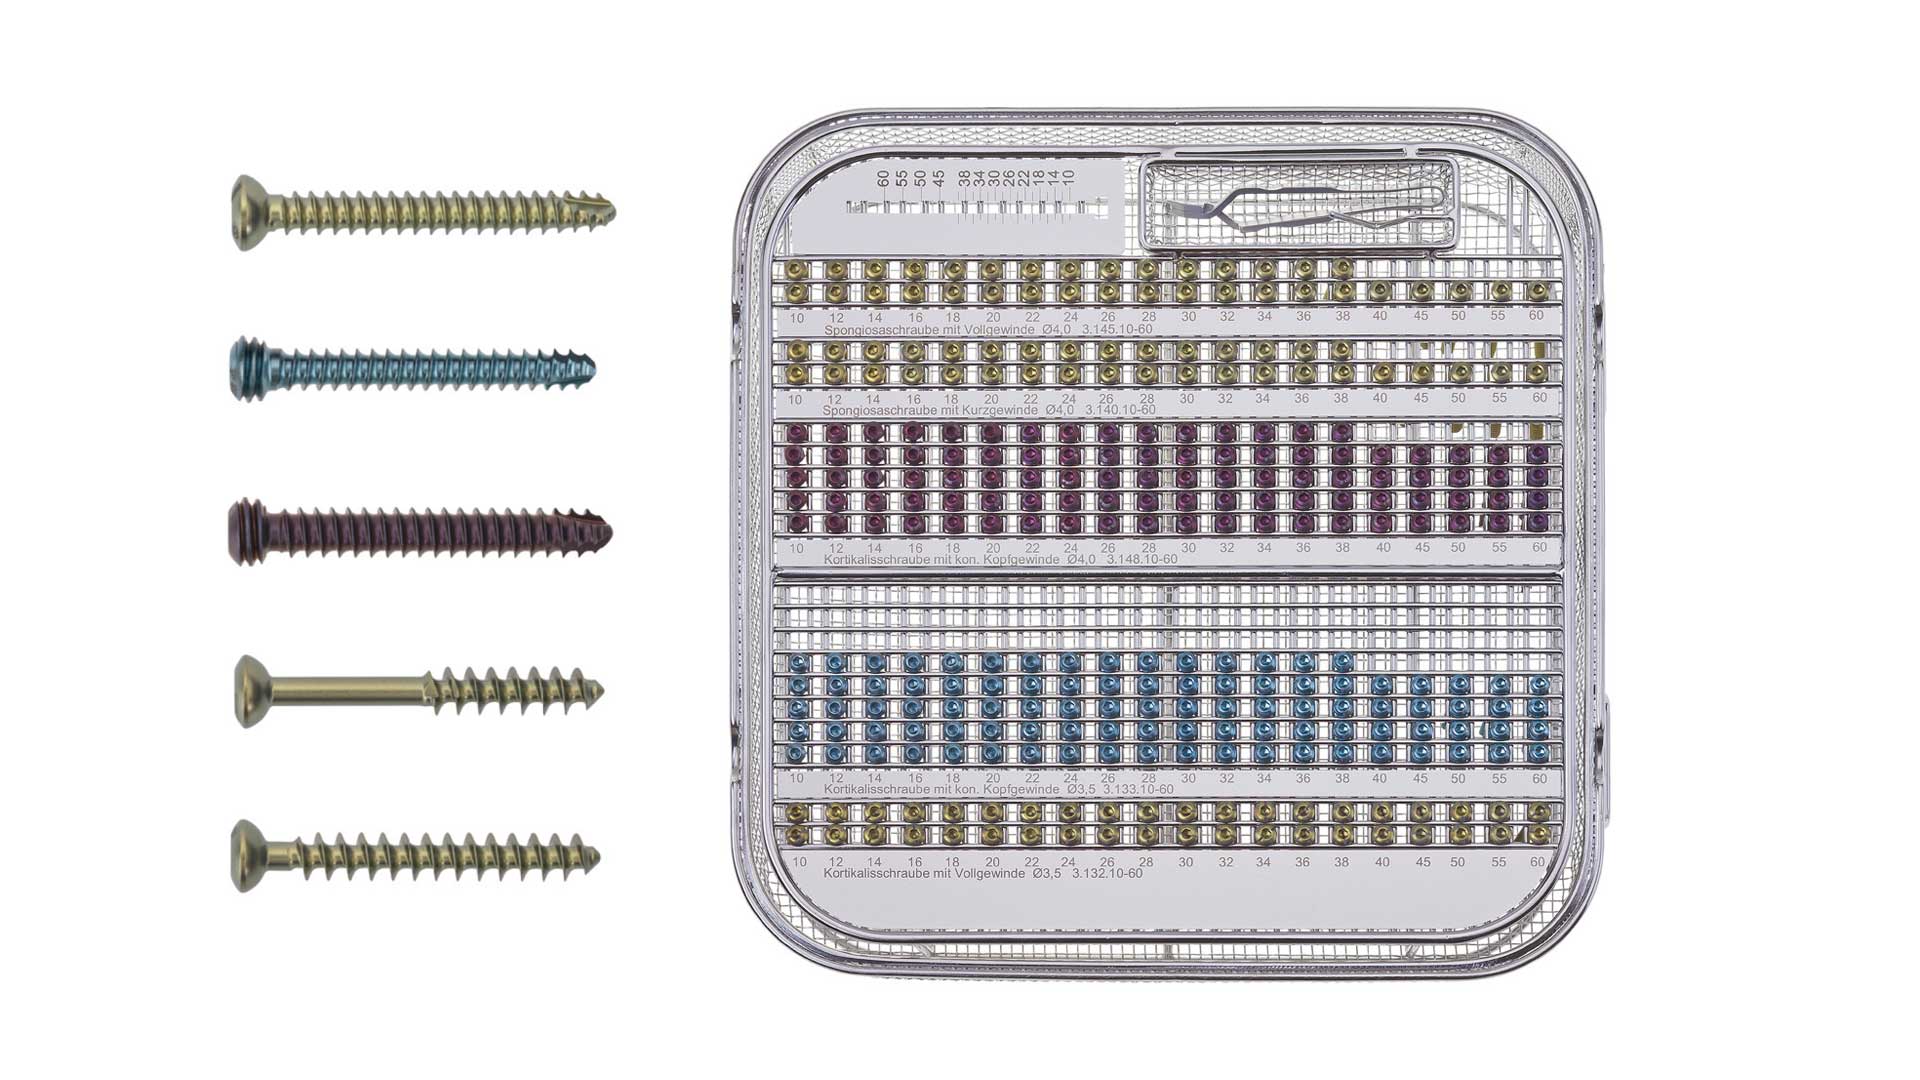 Königsee Implantate Produkte: Set Schrauben ws 3.5/4.0 ISK Kortikalis 4.0 Titan; aus der Kategorie Schrauben